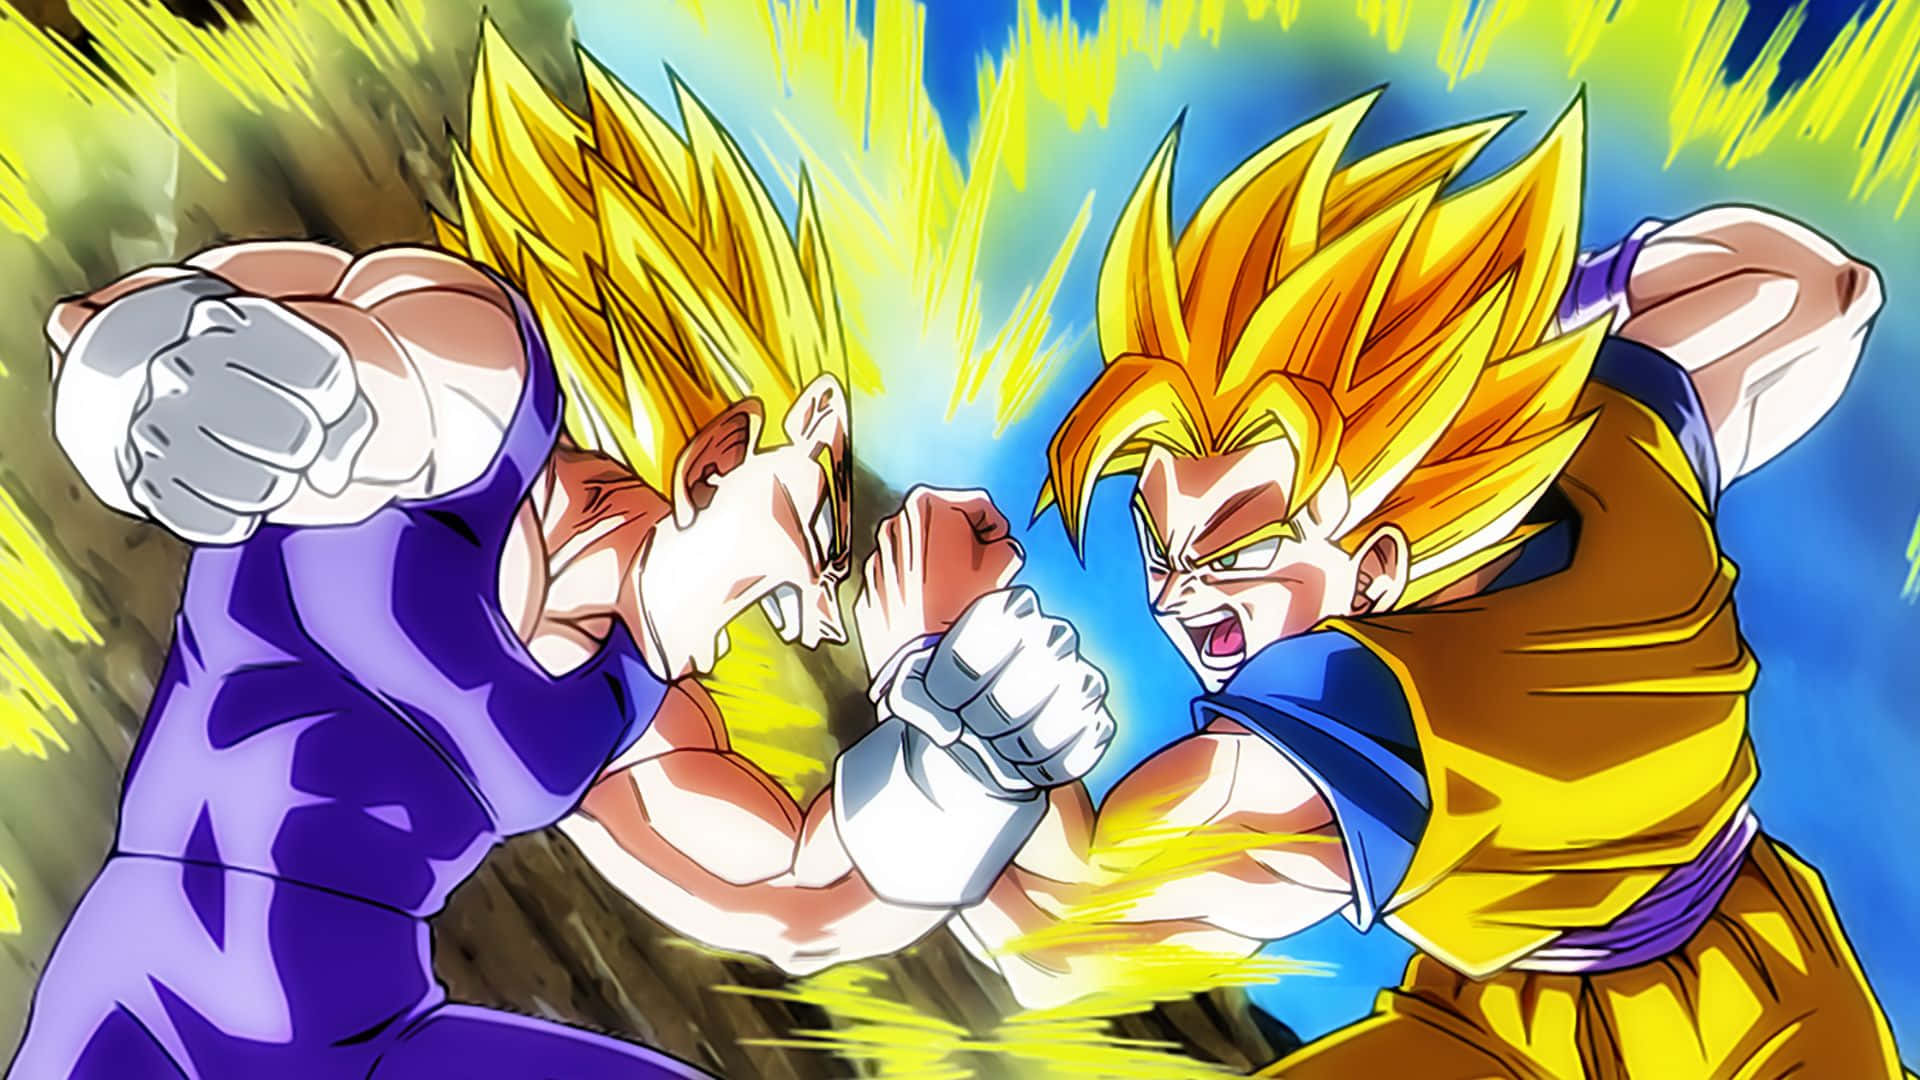 Epic Duel between Goku and Vegeta Wallpaper